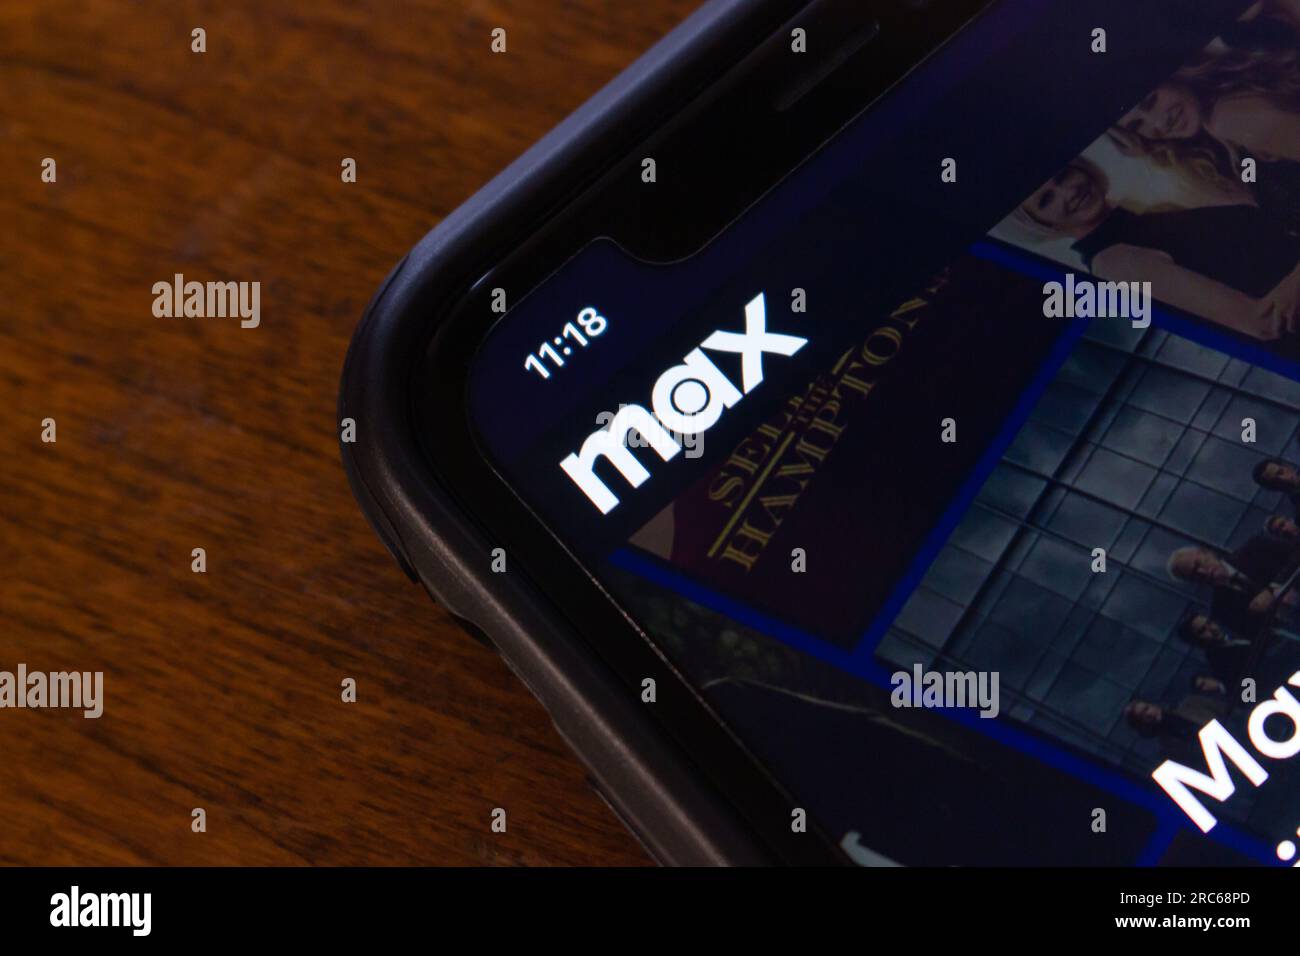 Gros plan logo de Max (rebaptisé de HBO Max) vu dans son site Web sur l'écran de l'iPhone. Max est un service de streaming vidéo à la demande par abonnement aux États-Unis Banque D'Images